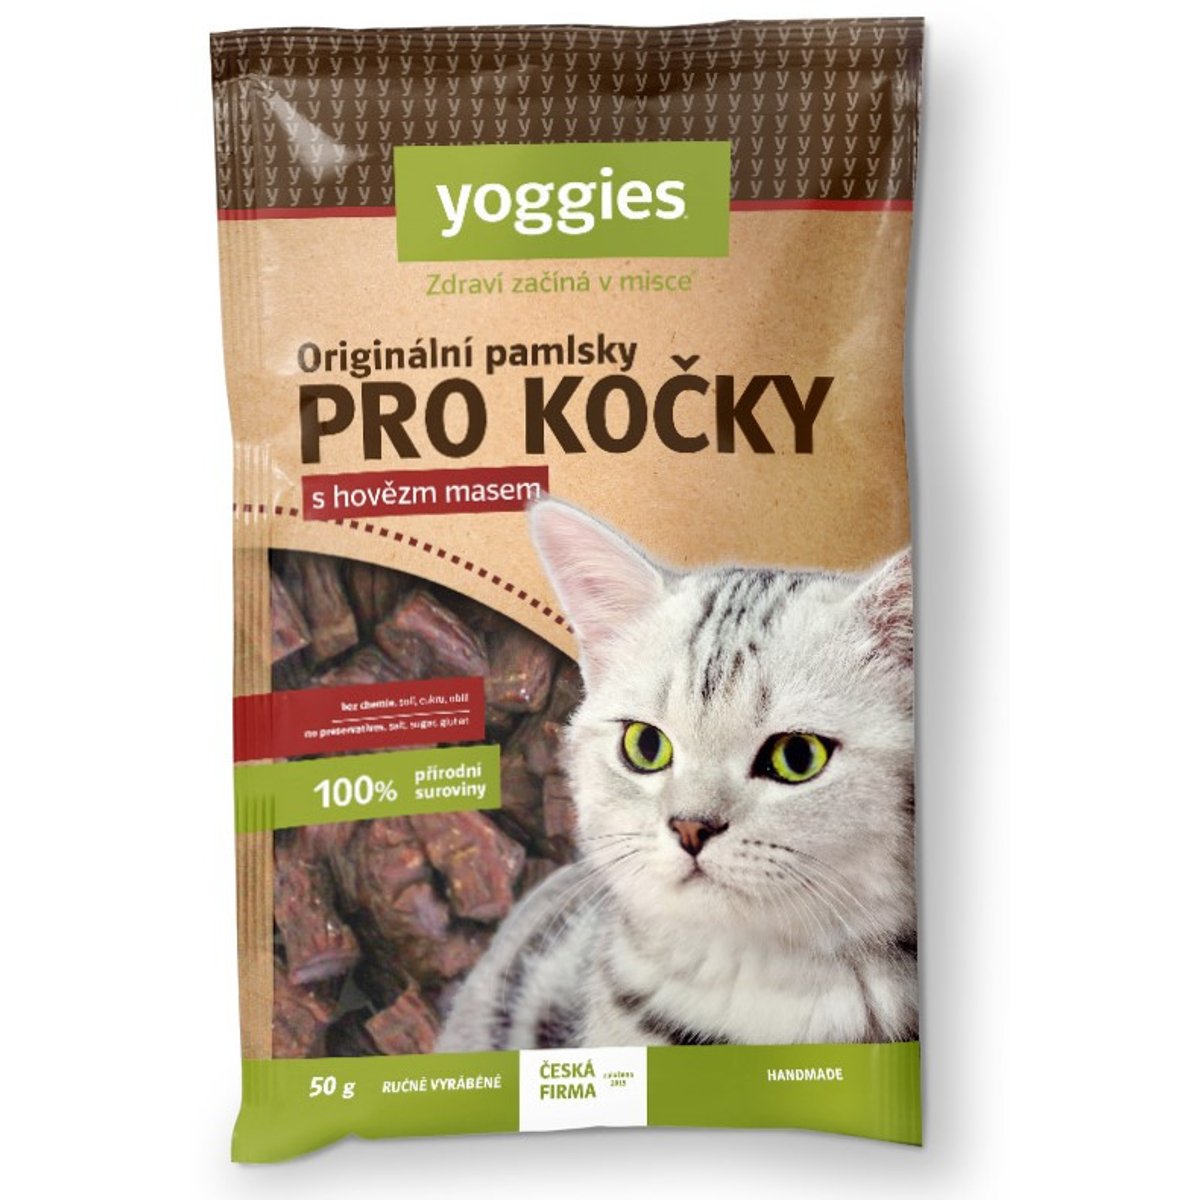 Yoggies Originální pamlsky pro kočky s hovězím masem